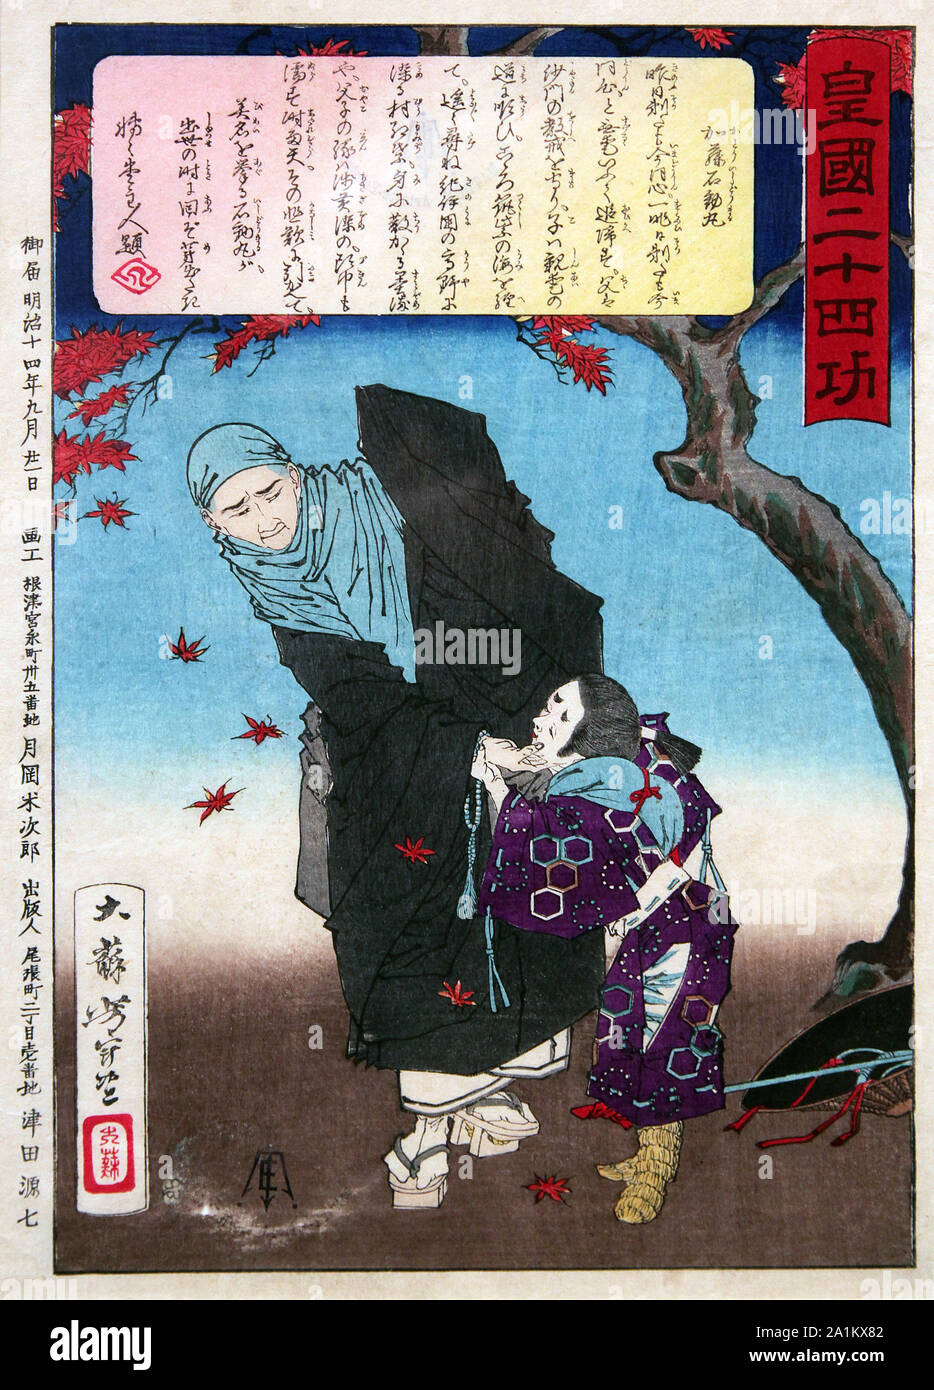 Kato Ishidomaru 1881da Tsukioka Yoshitoshi 1839-1892.stampa giapponese illustrano bellezza stagionale del Giappone.raffigurano autunno e rivelano un racconto giapponese. Foto Stock